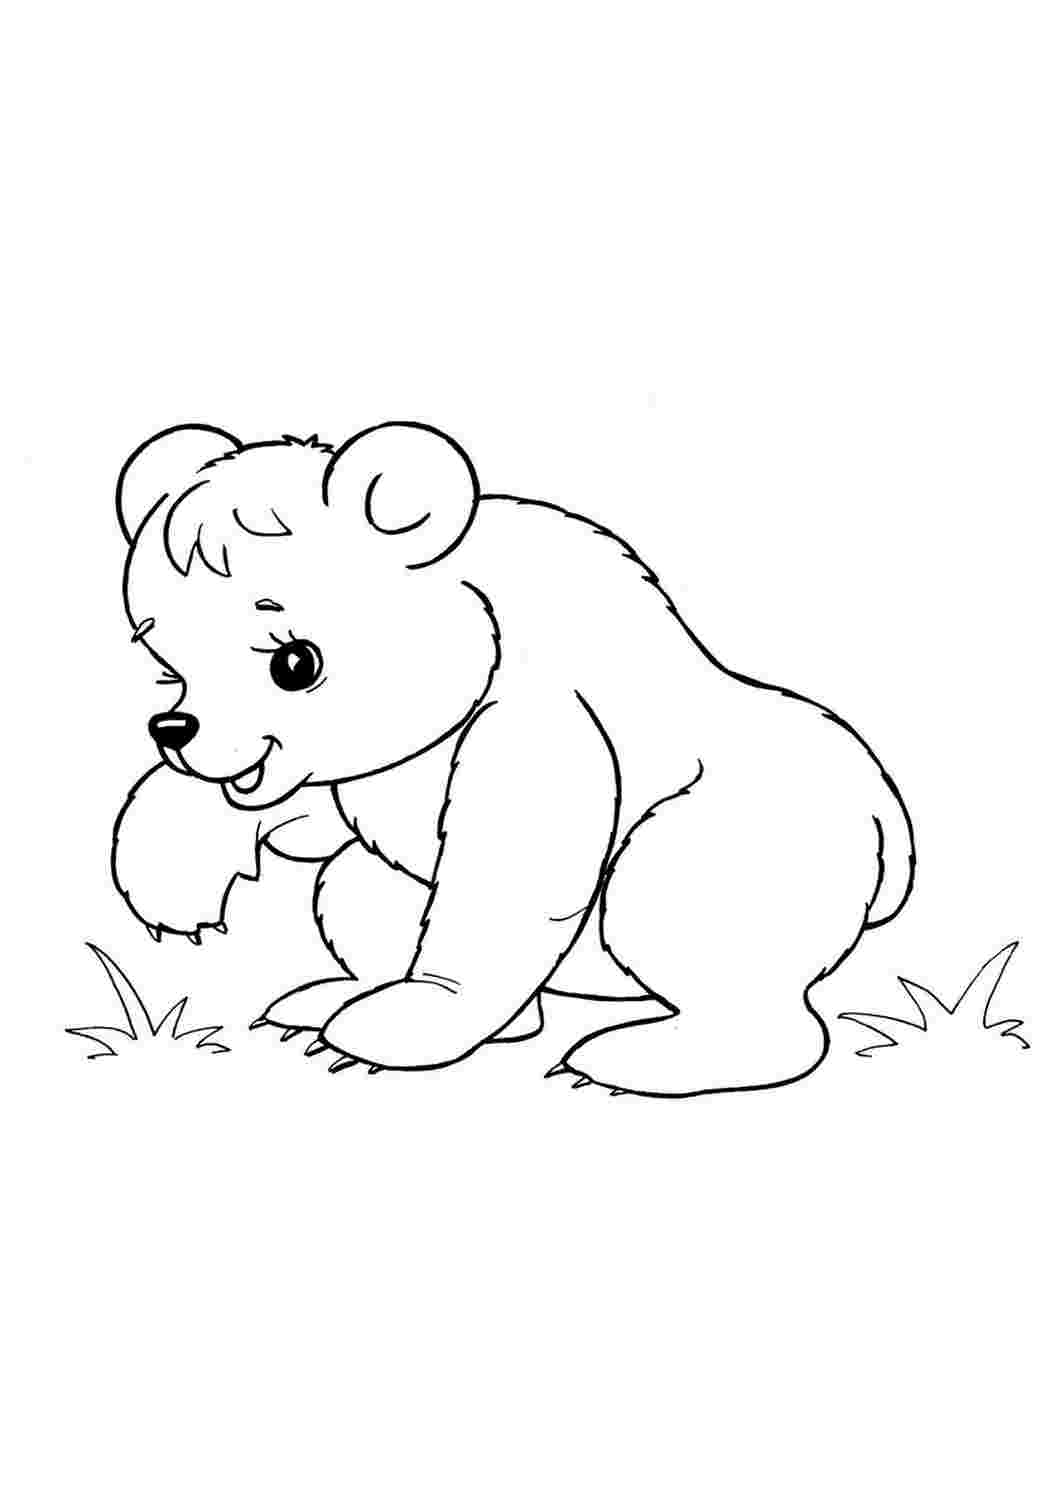 Животные группами раскраски. Раскраска. Медвежонок. Медведь раскраска. Раскраски животных для детей. Медведь раскраска для детей.